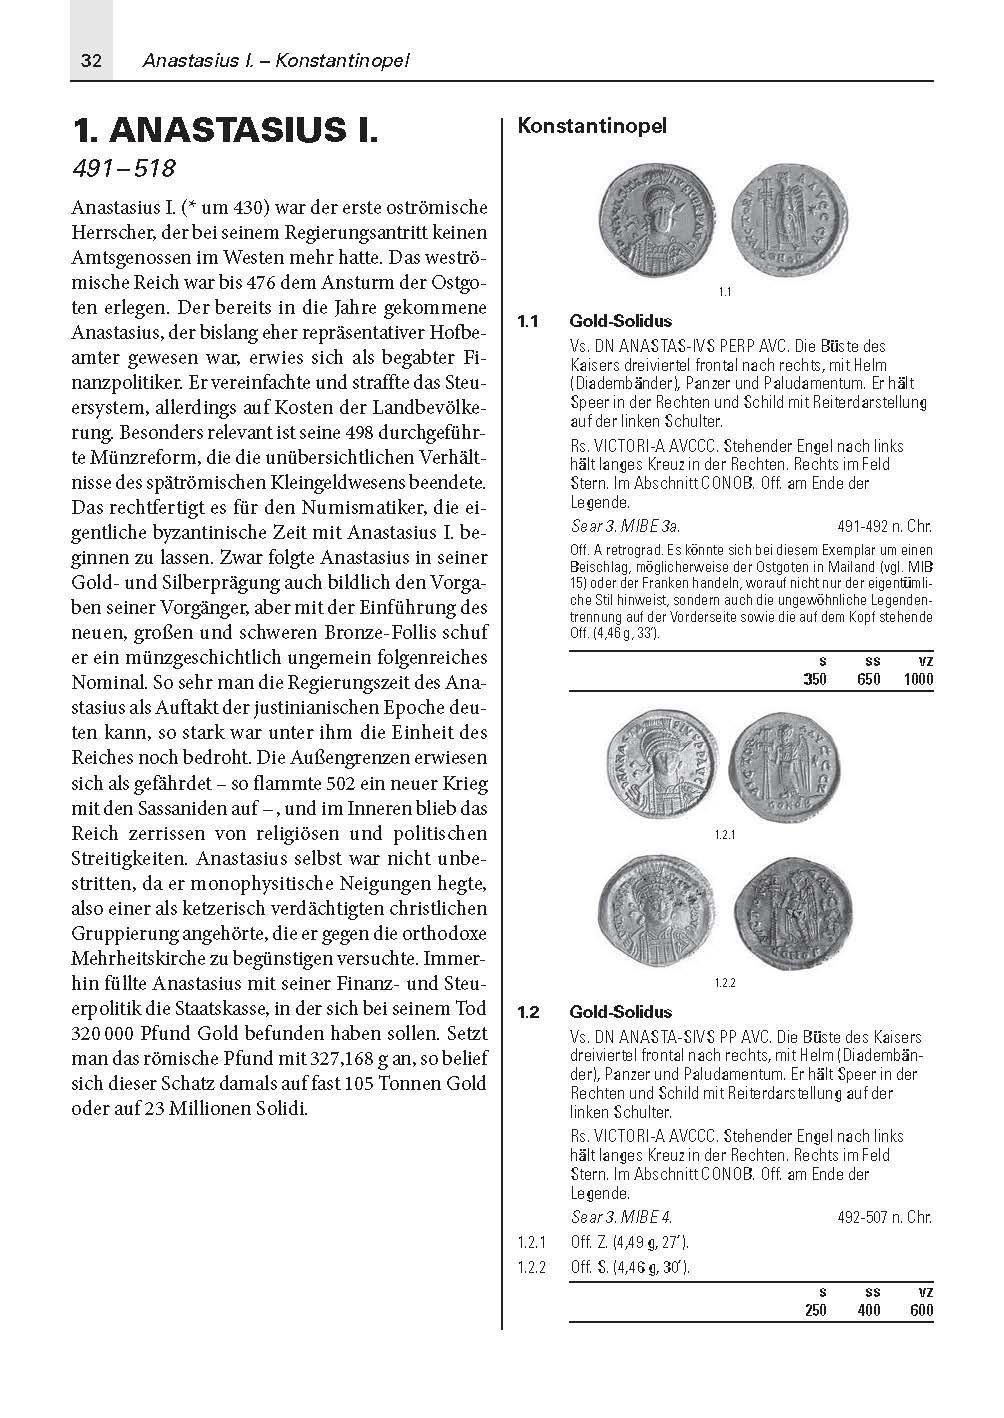 Bild: 9783866462403 | Die Münzen des Byzantinischen Reiches 491-1453 | Andreas Urs Sommer